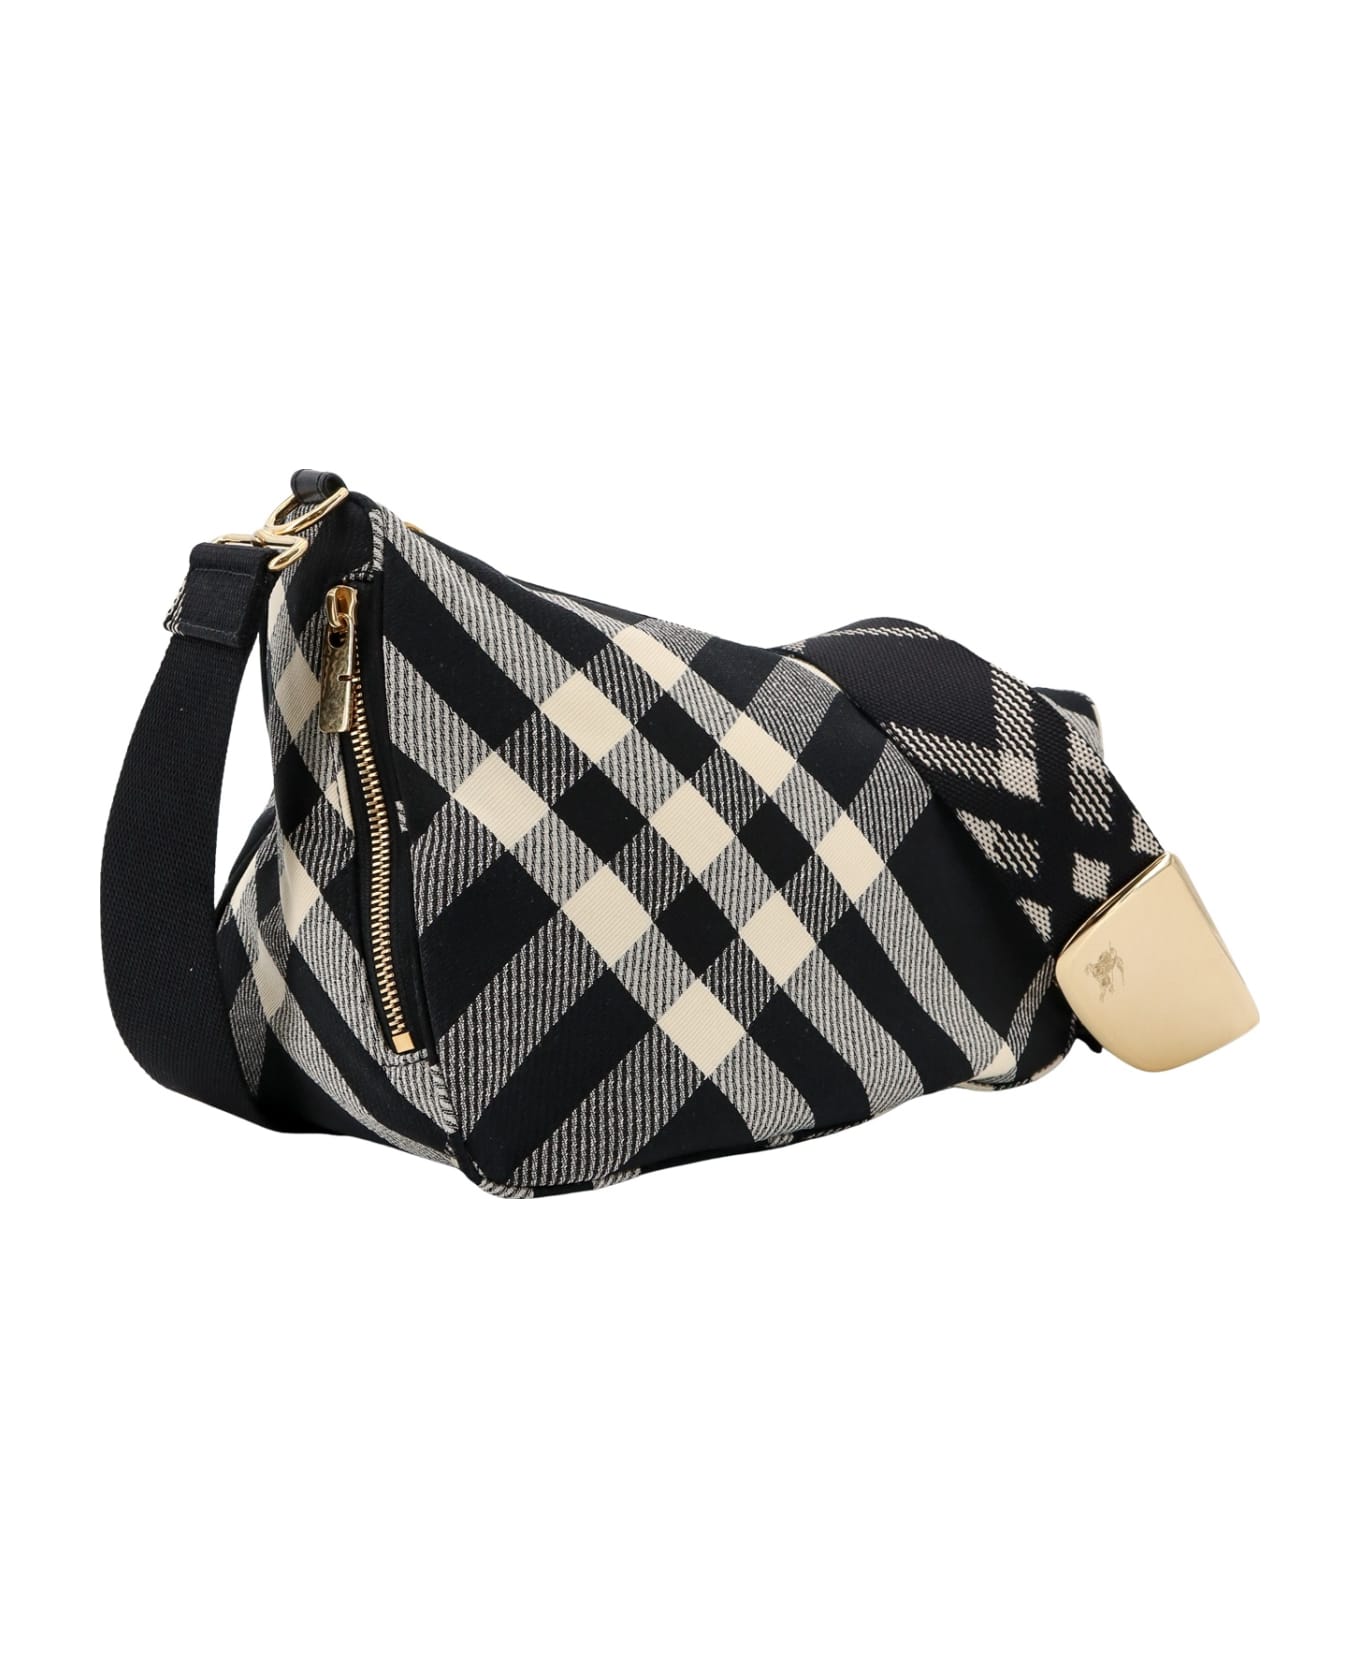 Burberry Shoulder Bag - Black/calico